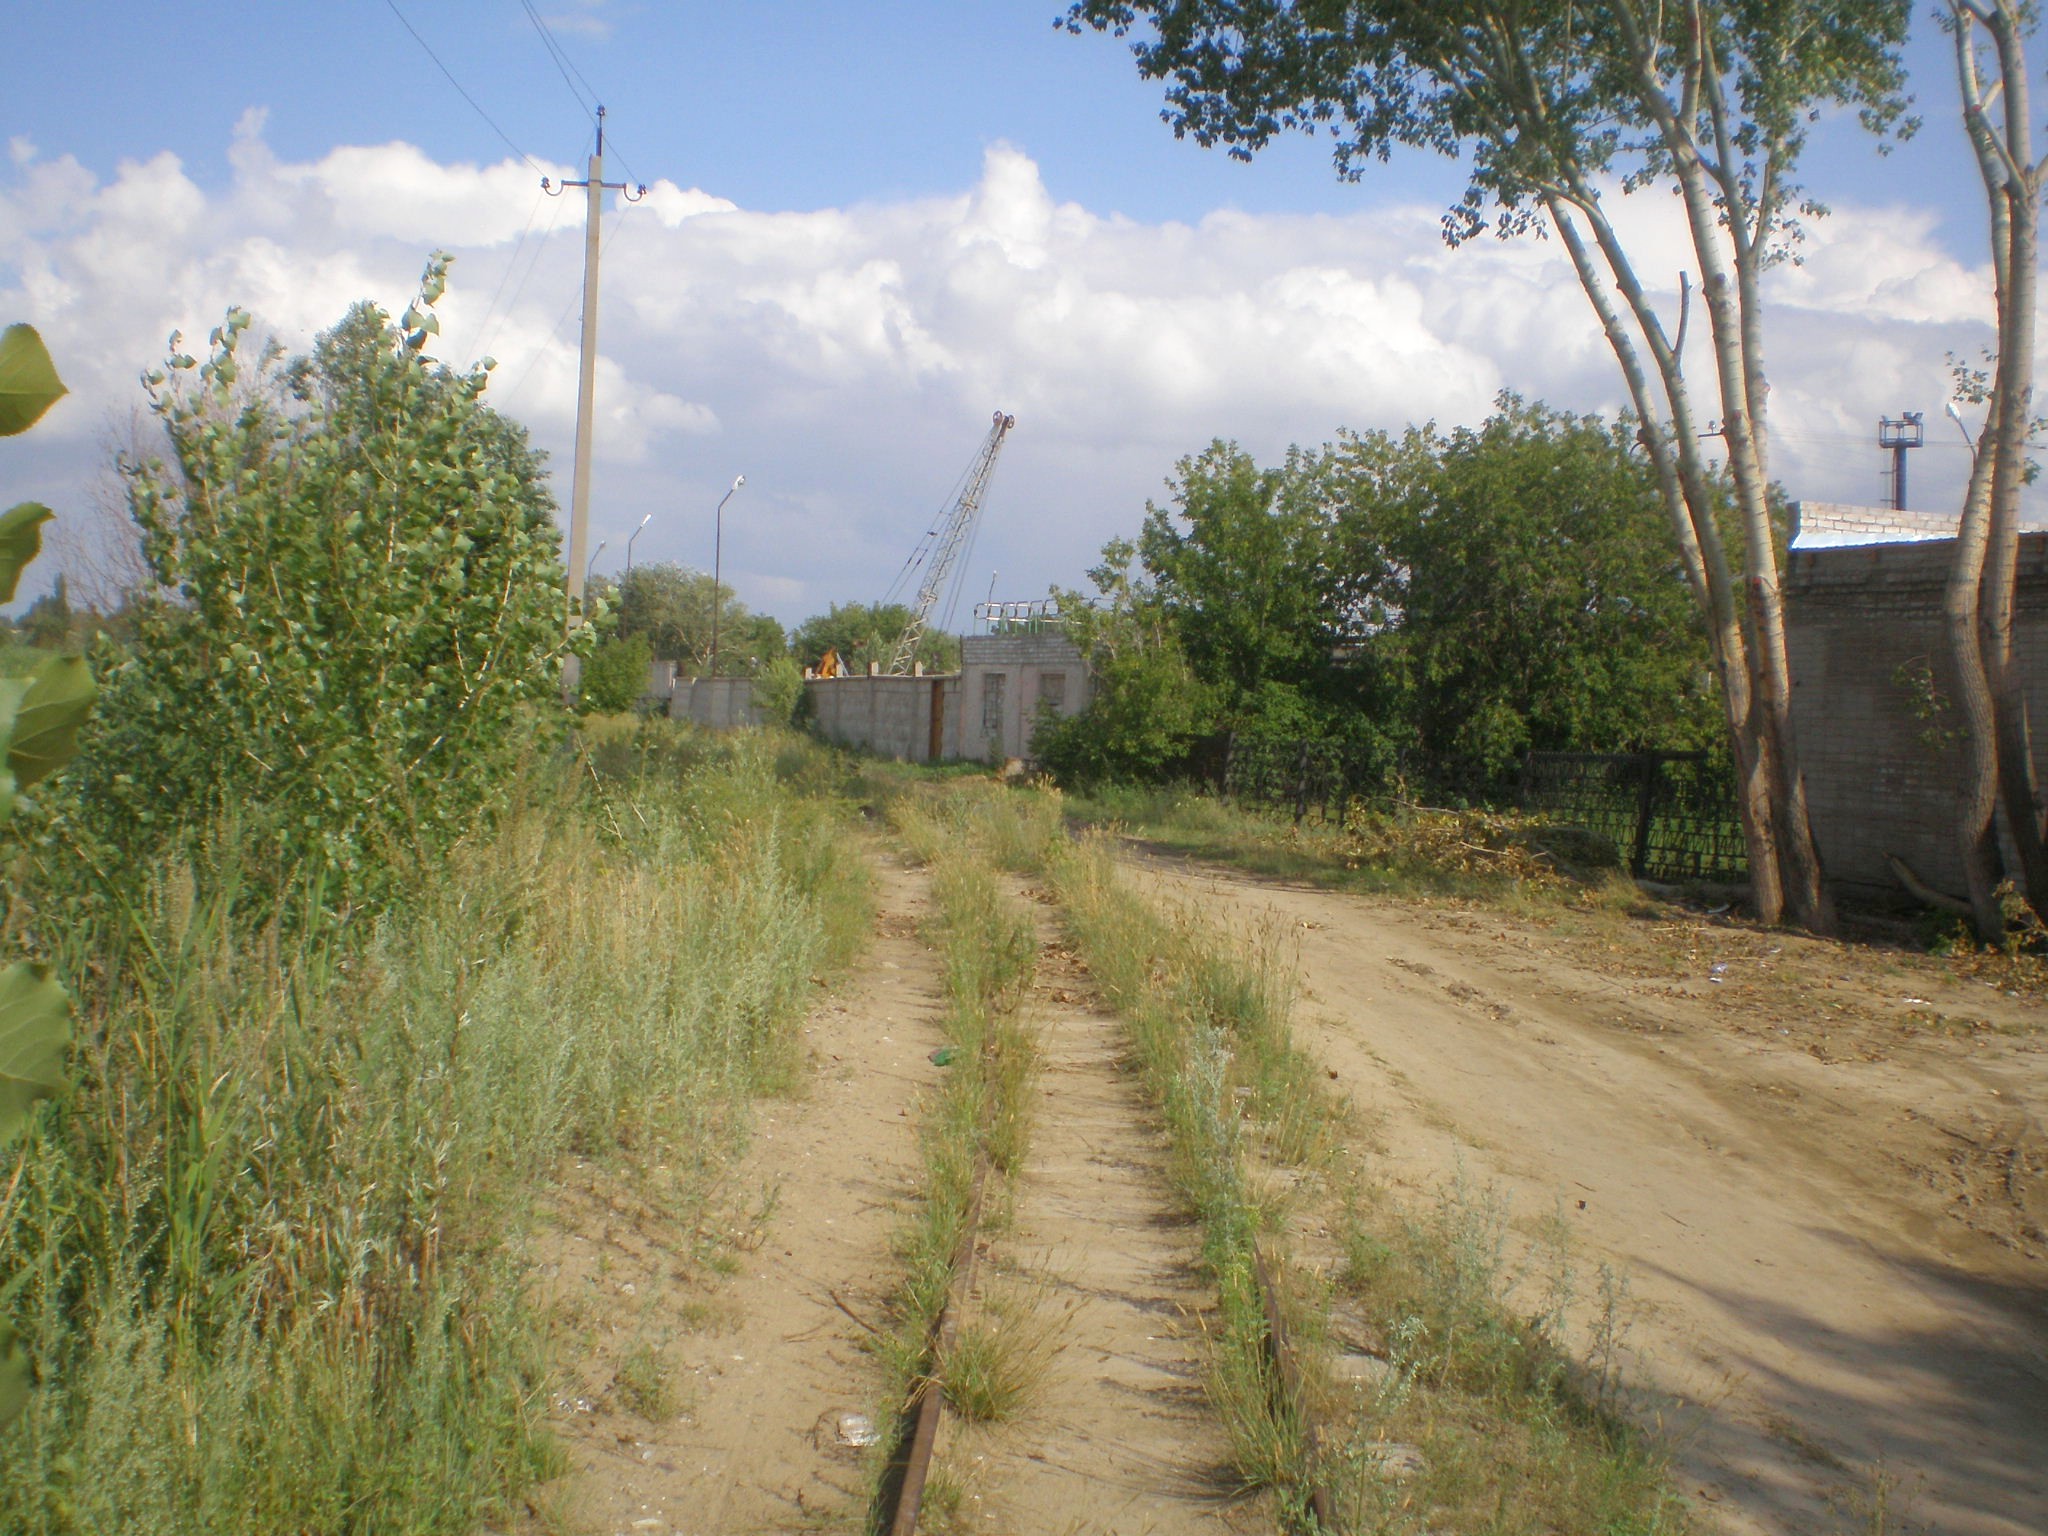 Павлодарская детская железная дорога  —  фотографии, сделанные в 2009 году (часть 2)